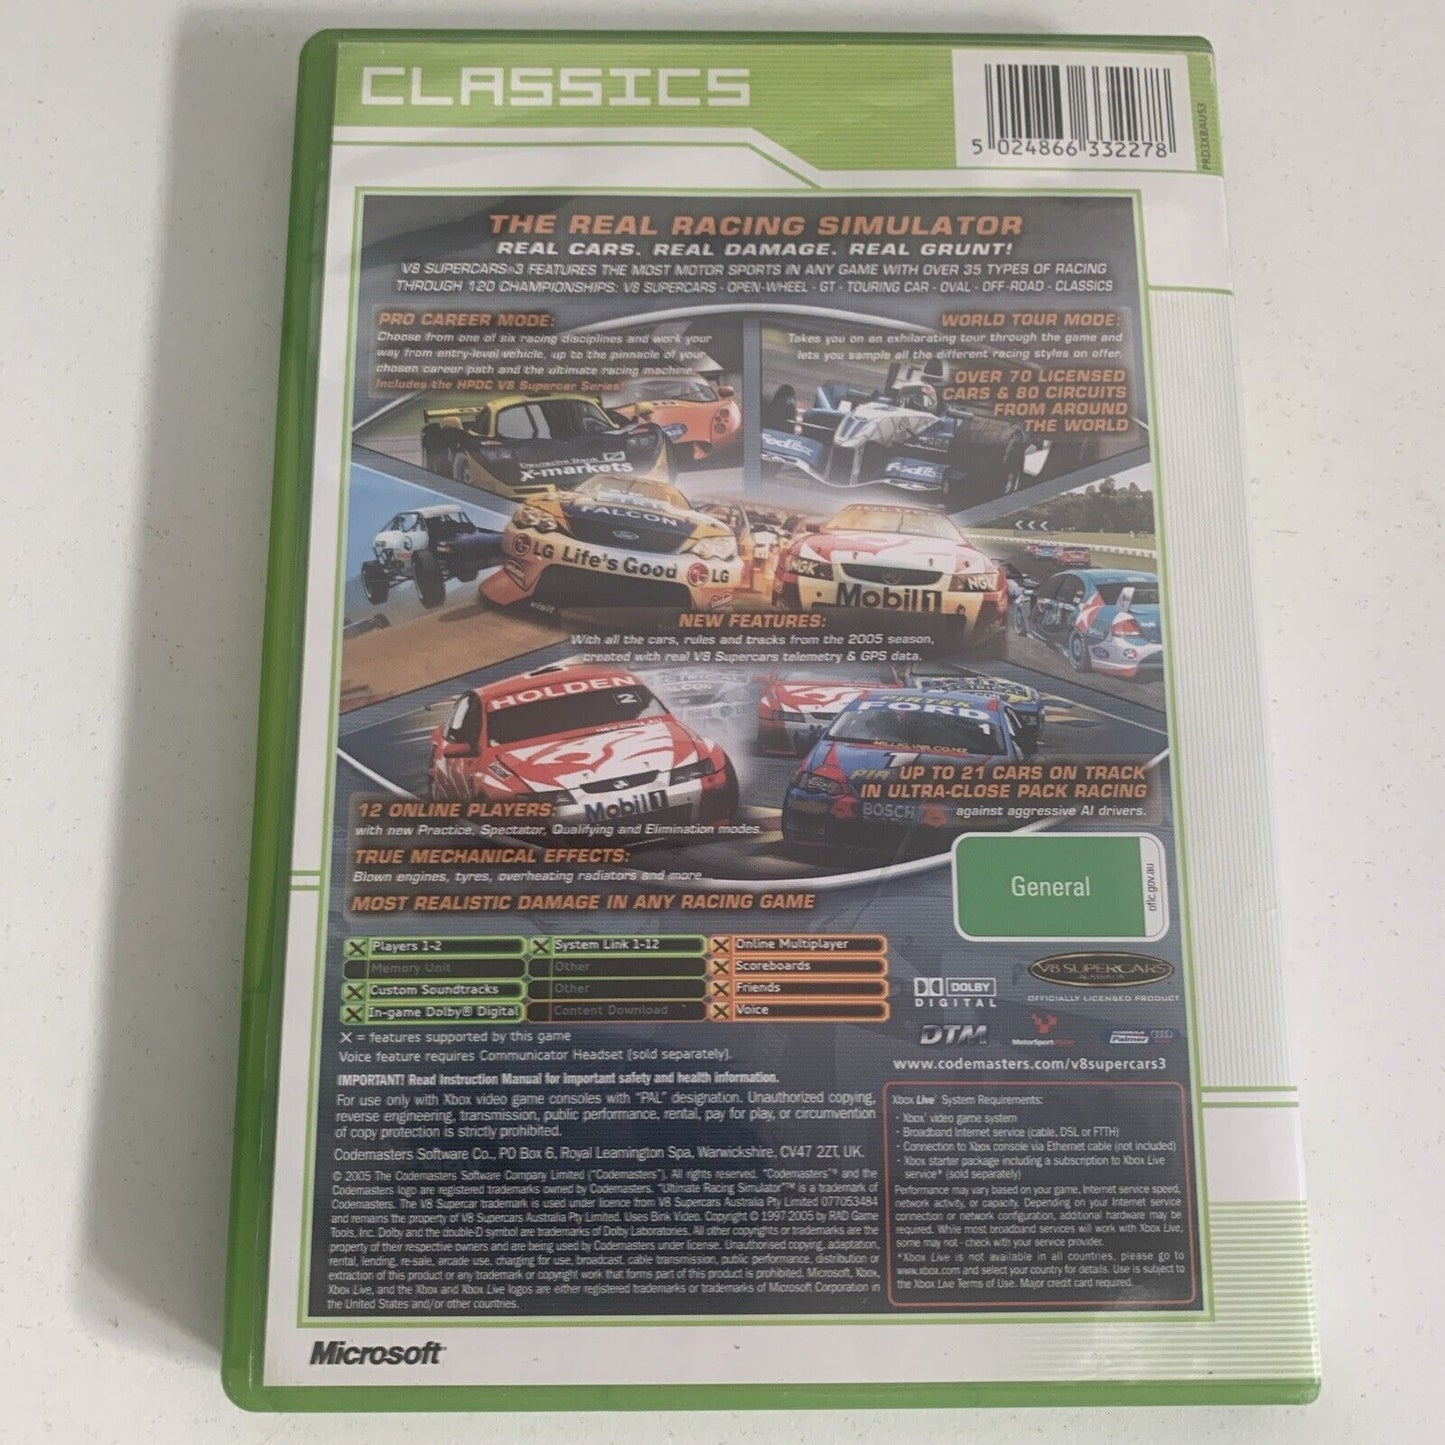 V8 Supercars Australia 3 Xbox Original Game